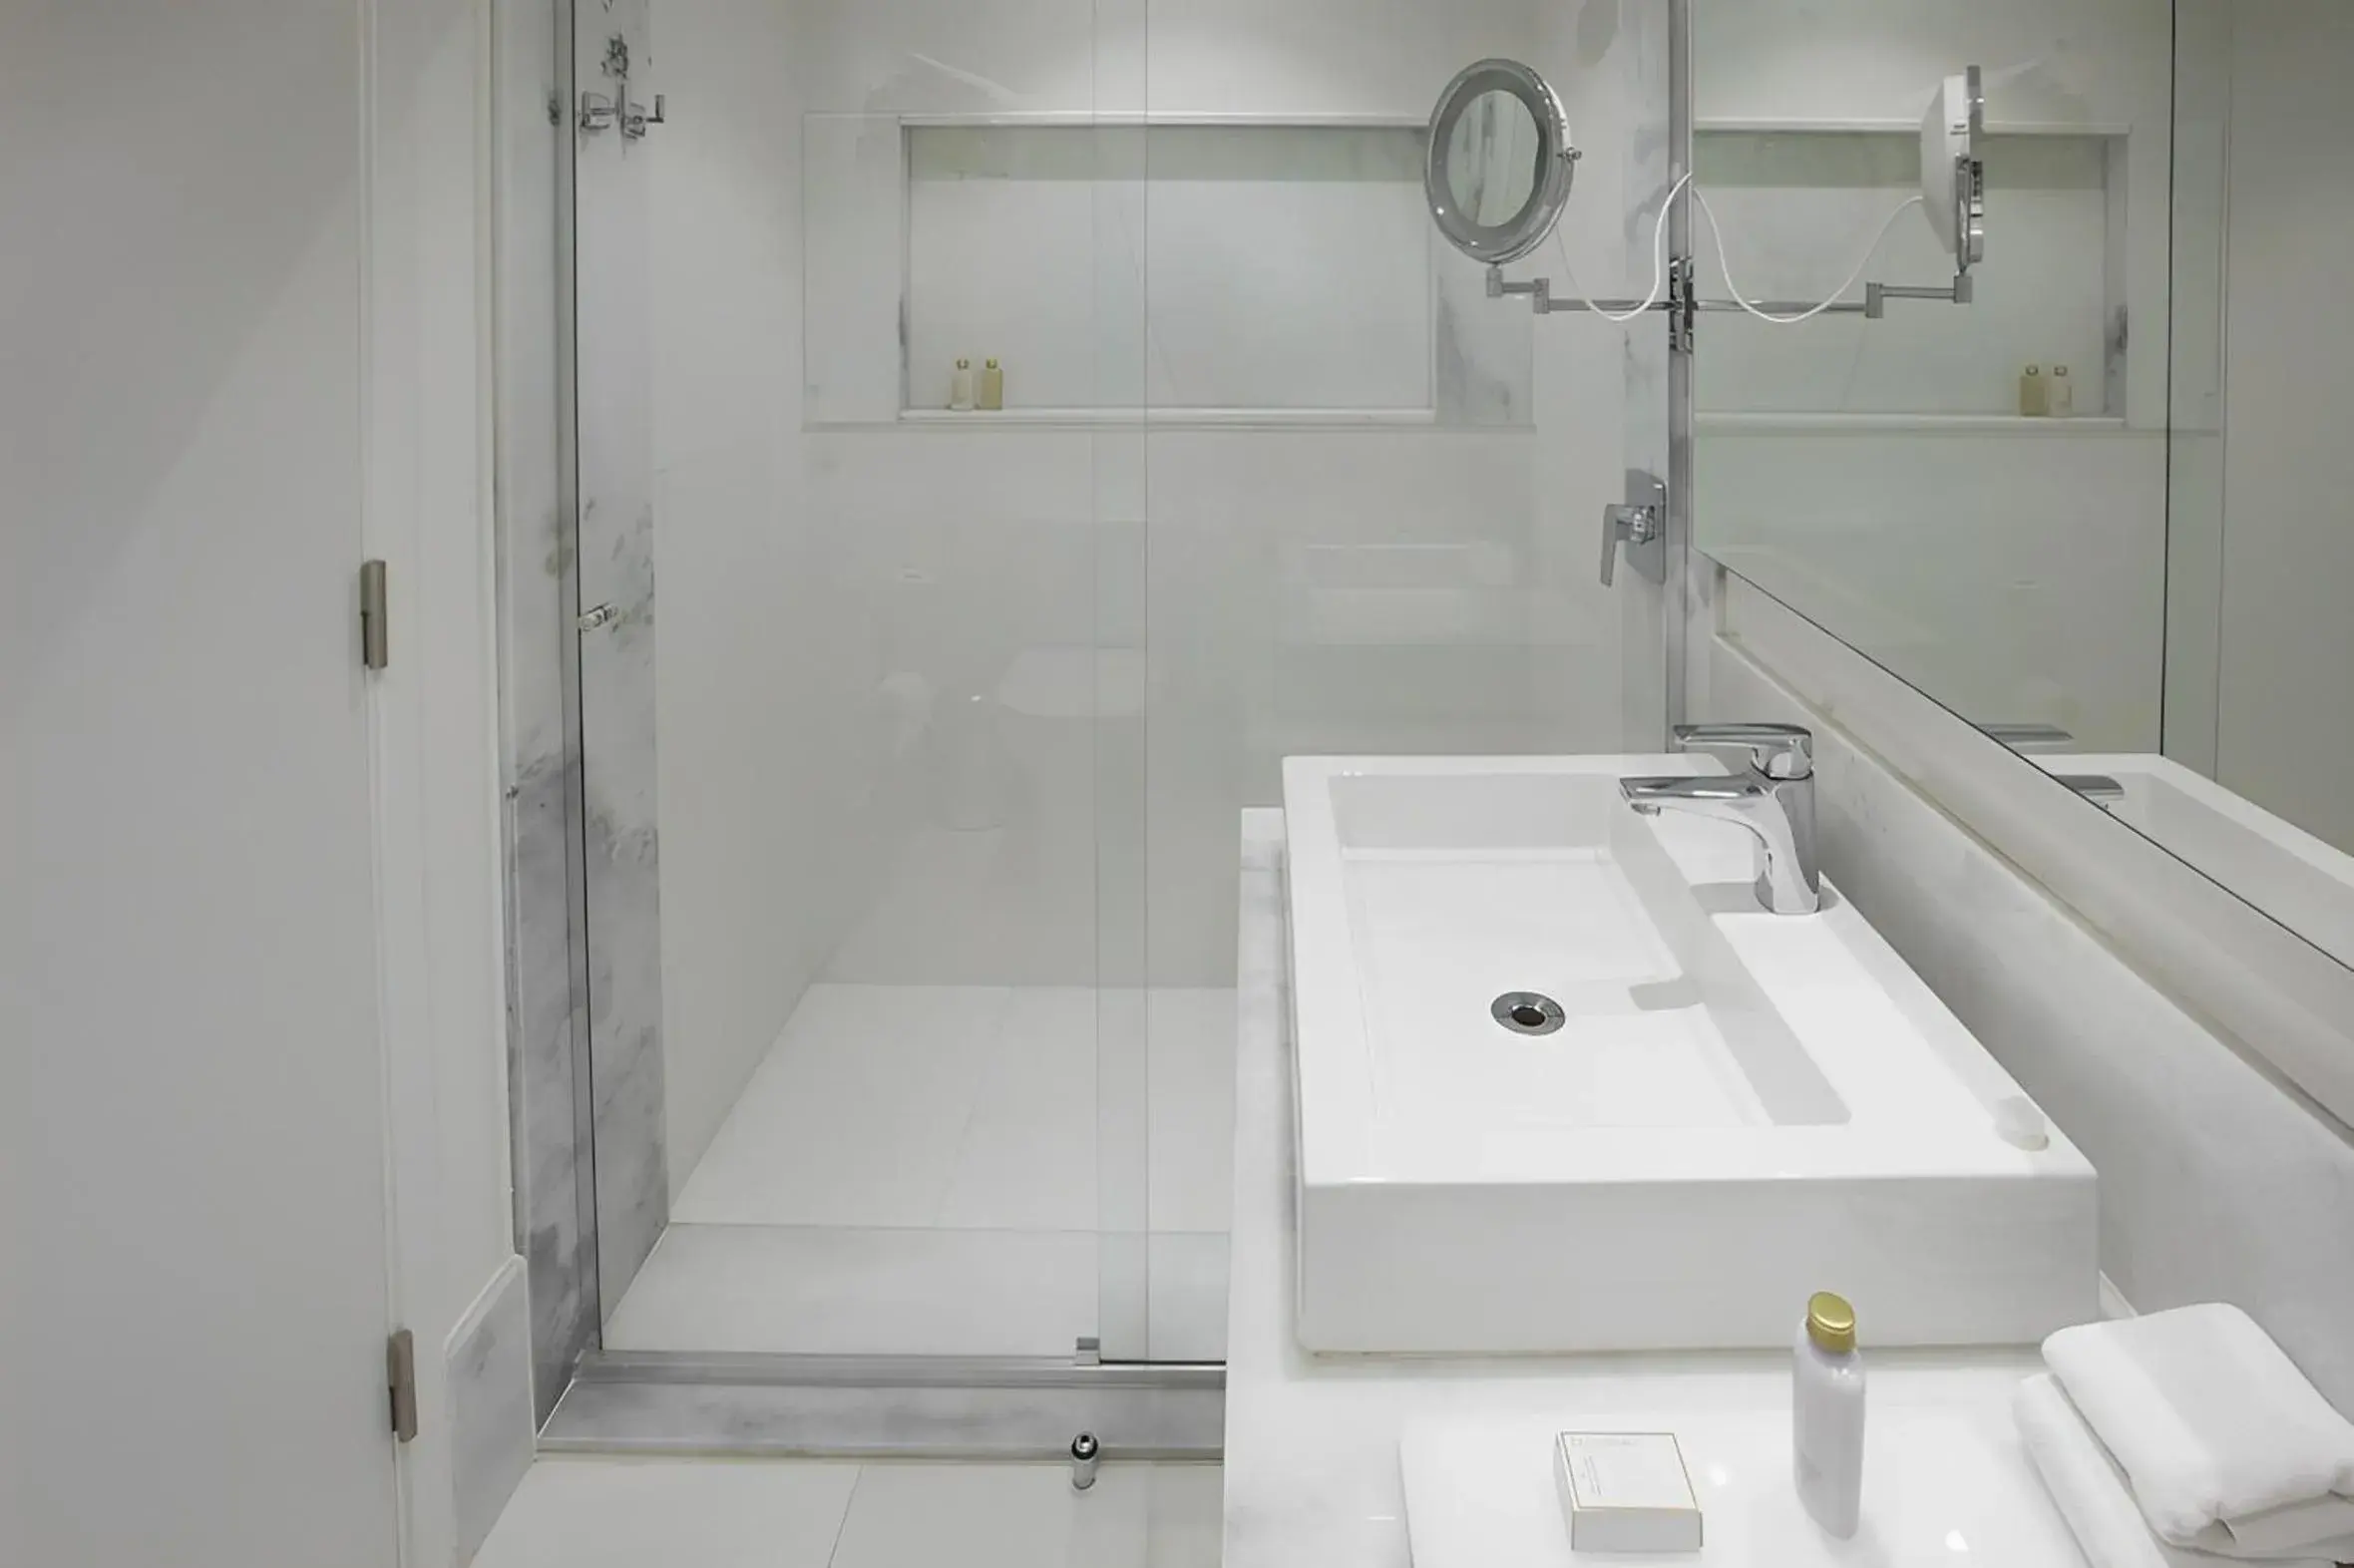 Bathroom in Vogue Square Fashion Hotel by Lenny Niemeyer